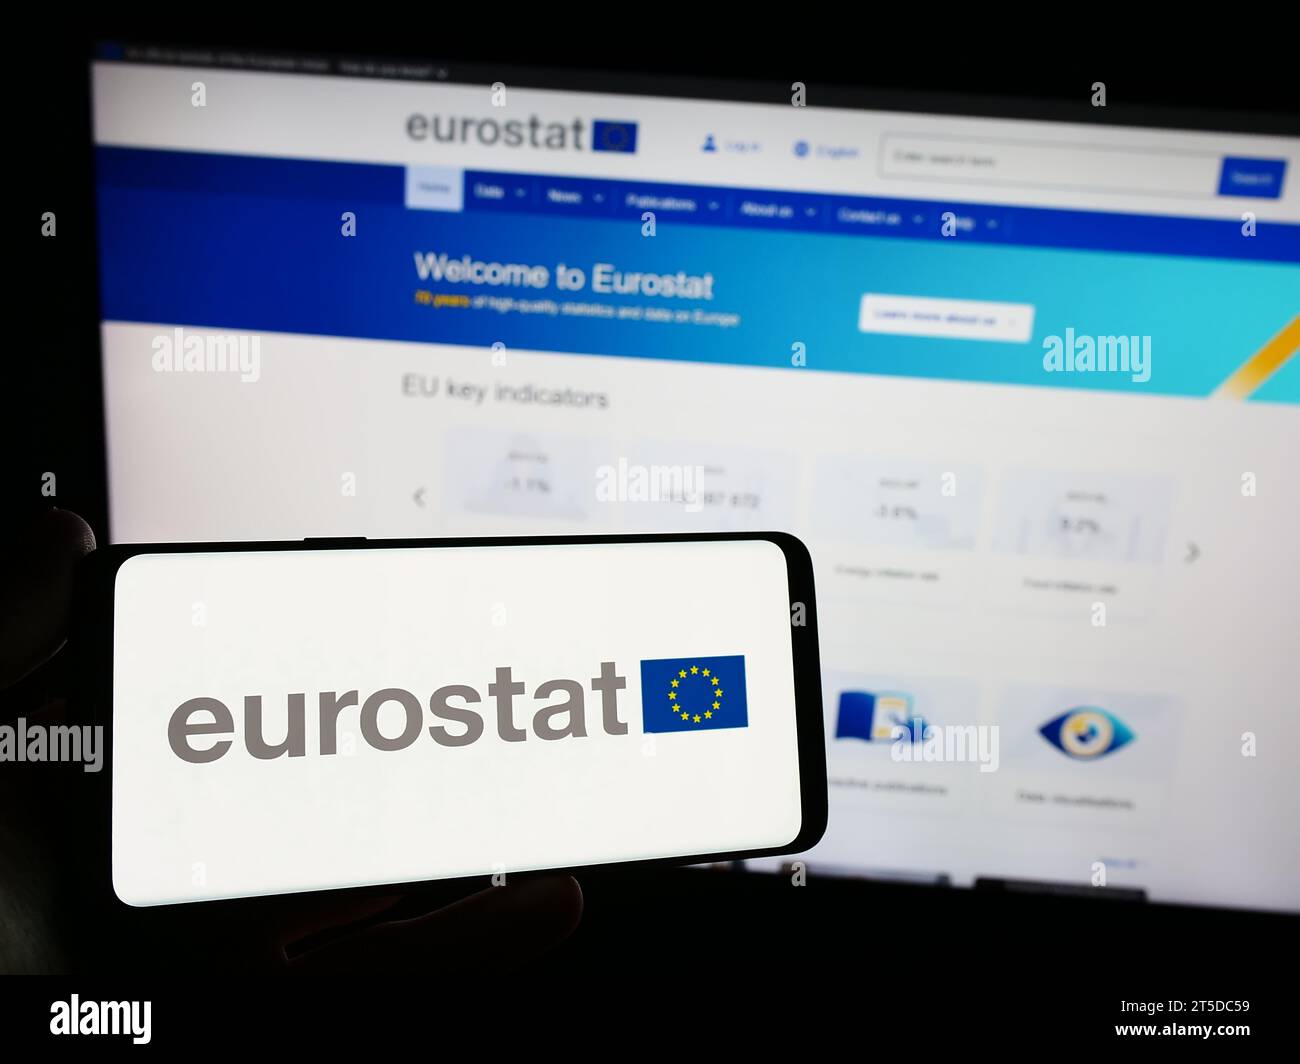 Persona in possesso di uno smartphone con il logo dell'Istituto europeo di statistica Eurostat di fronte al sito web. Concentrarsi sul display del telefono. Foto Stock